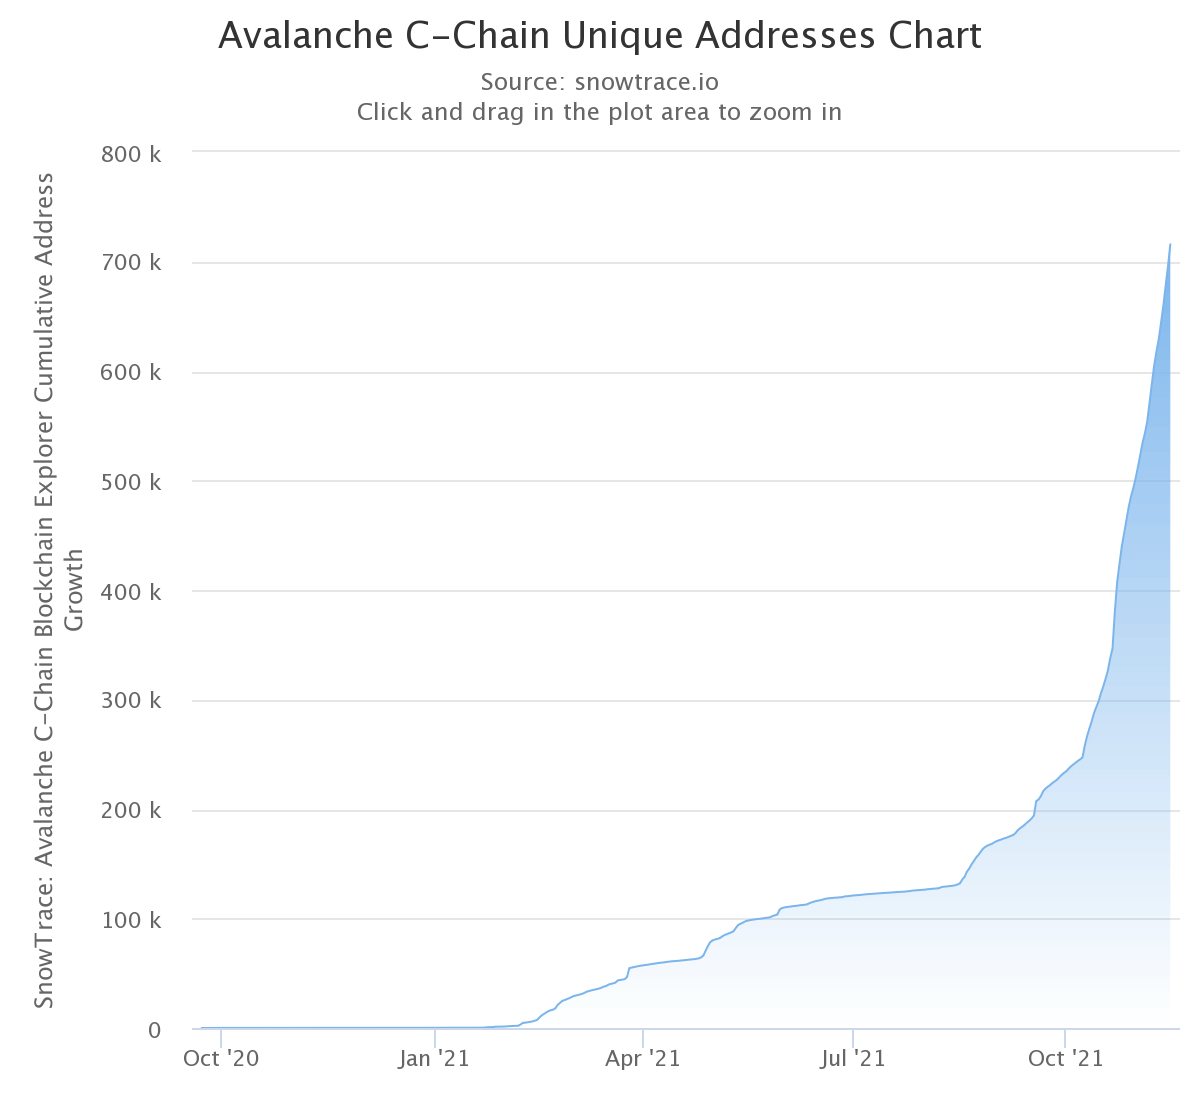 Grafik zur Anzahl der eindeutigen Adressen auf der C-Chain von Avalanche (Quelle: SnowTrace)